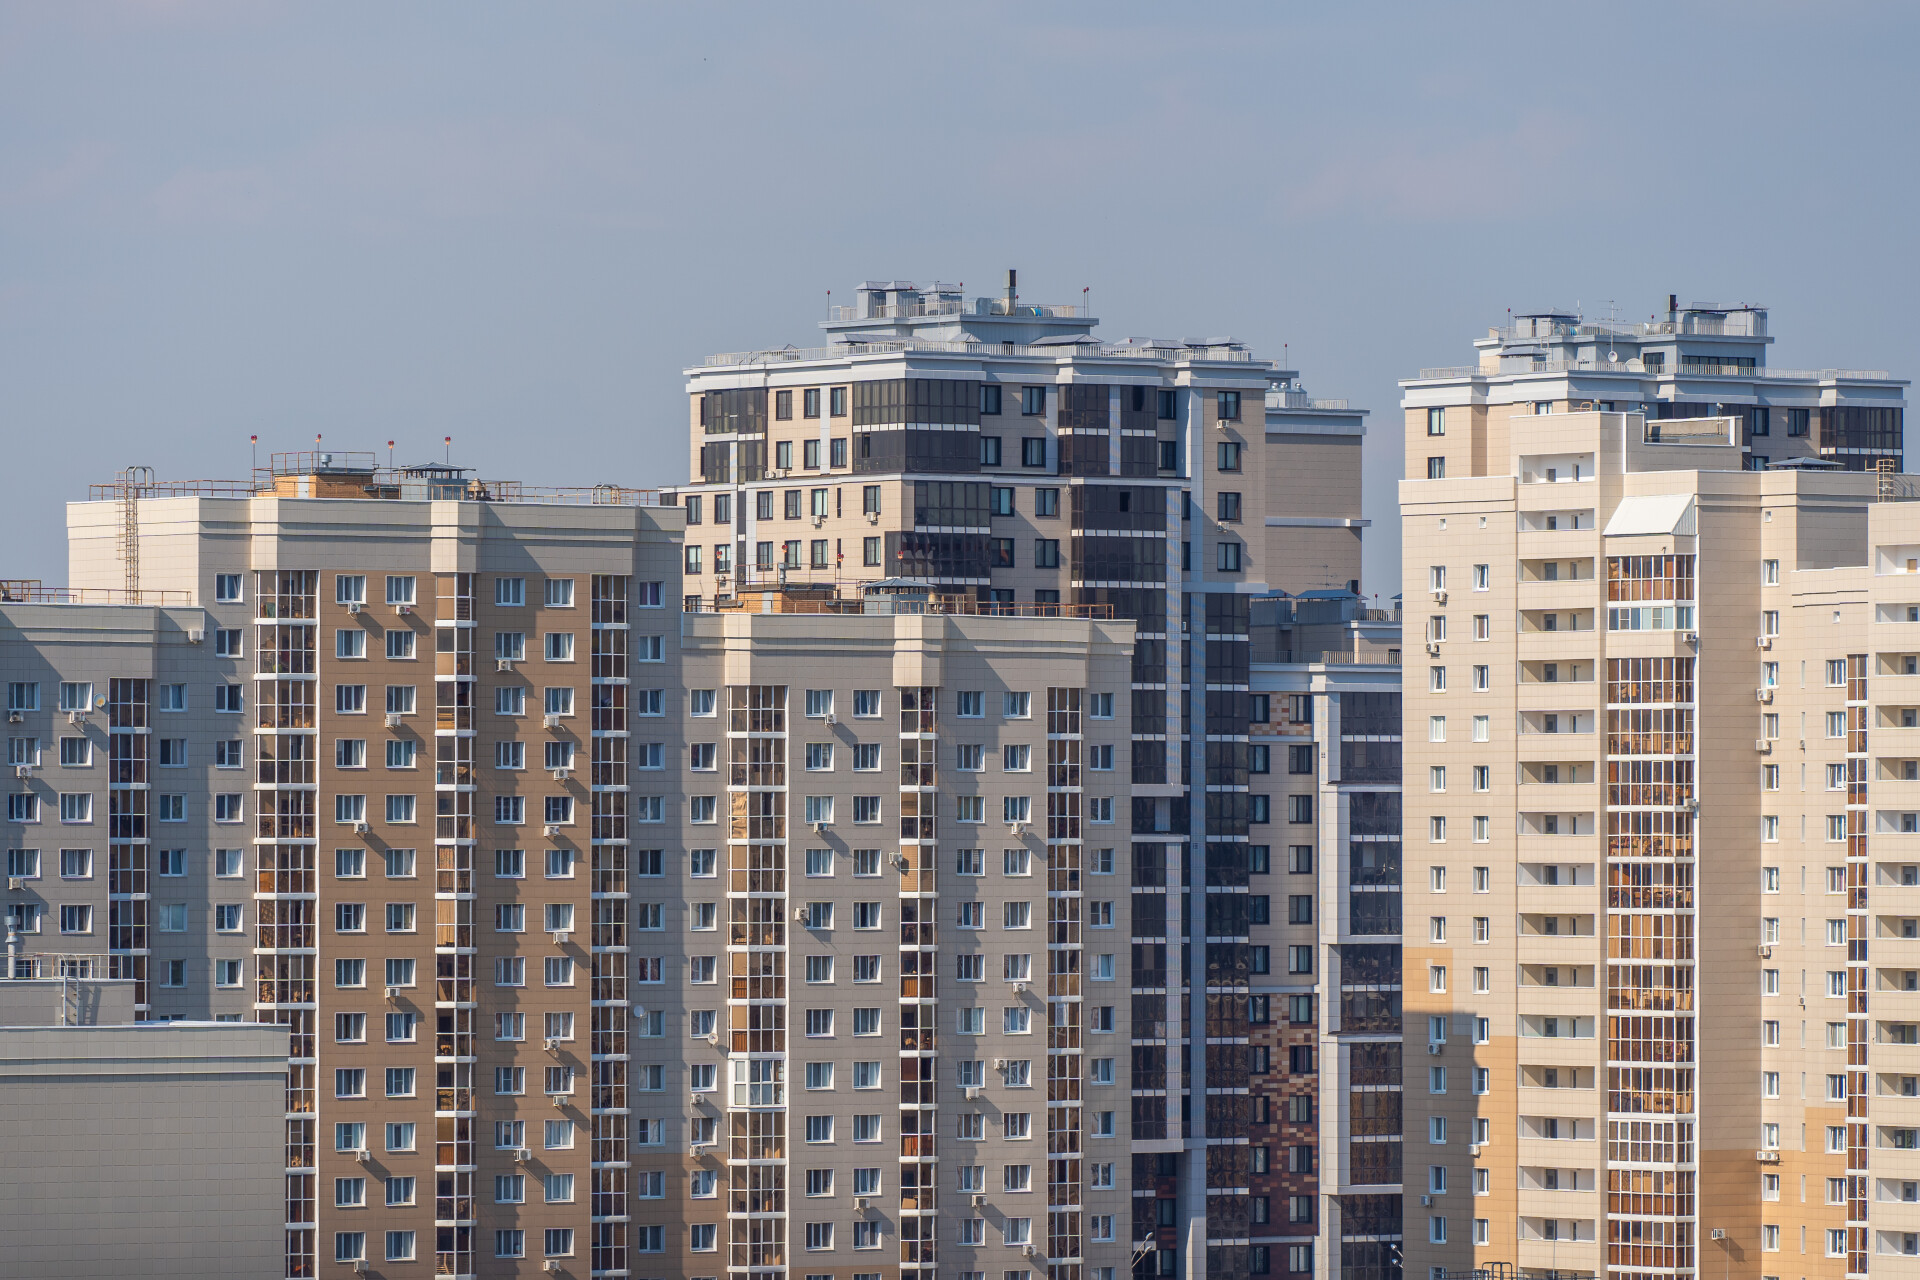 В ноябре в Татарстане введено в три раза больше жилья, чем годом ранее